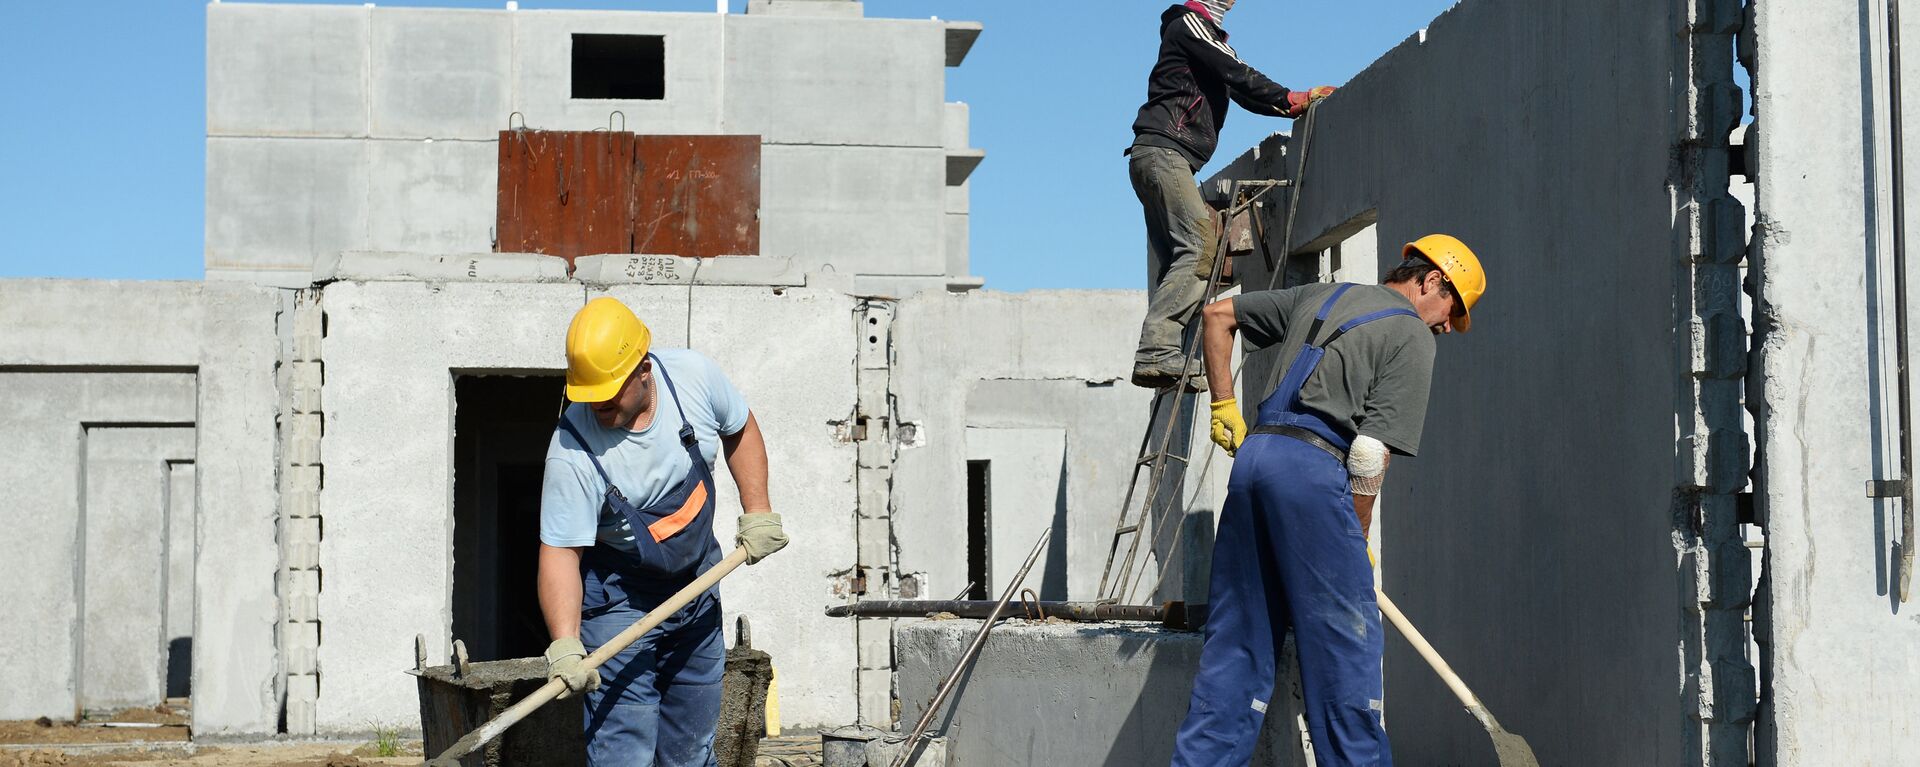 Строители осуществляют монтаж стеновых панелей цокольного этажа многоквартирного жилого дома - Sputnik Узбекистан, 1920, 16.02.2018